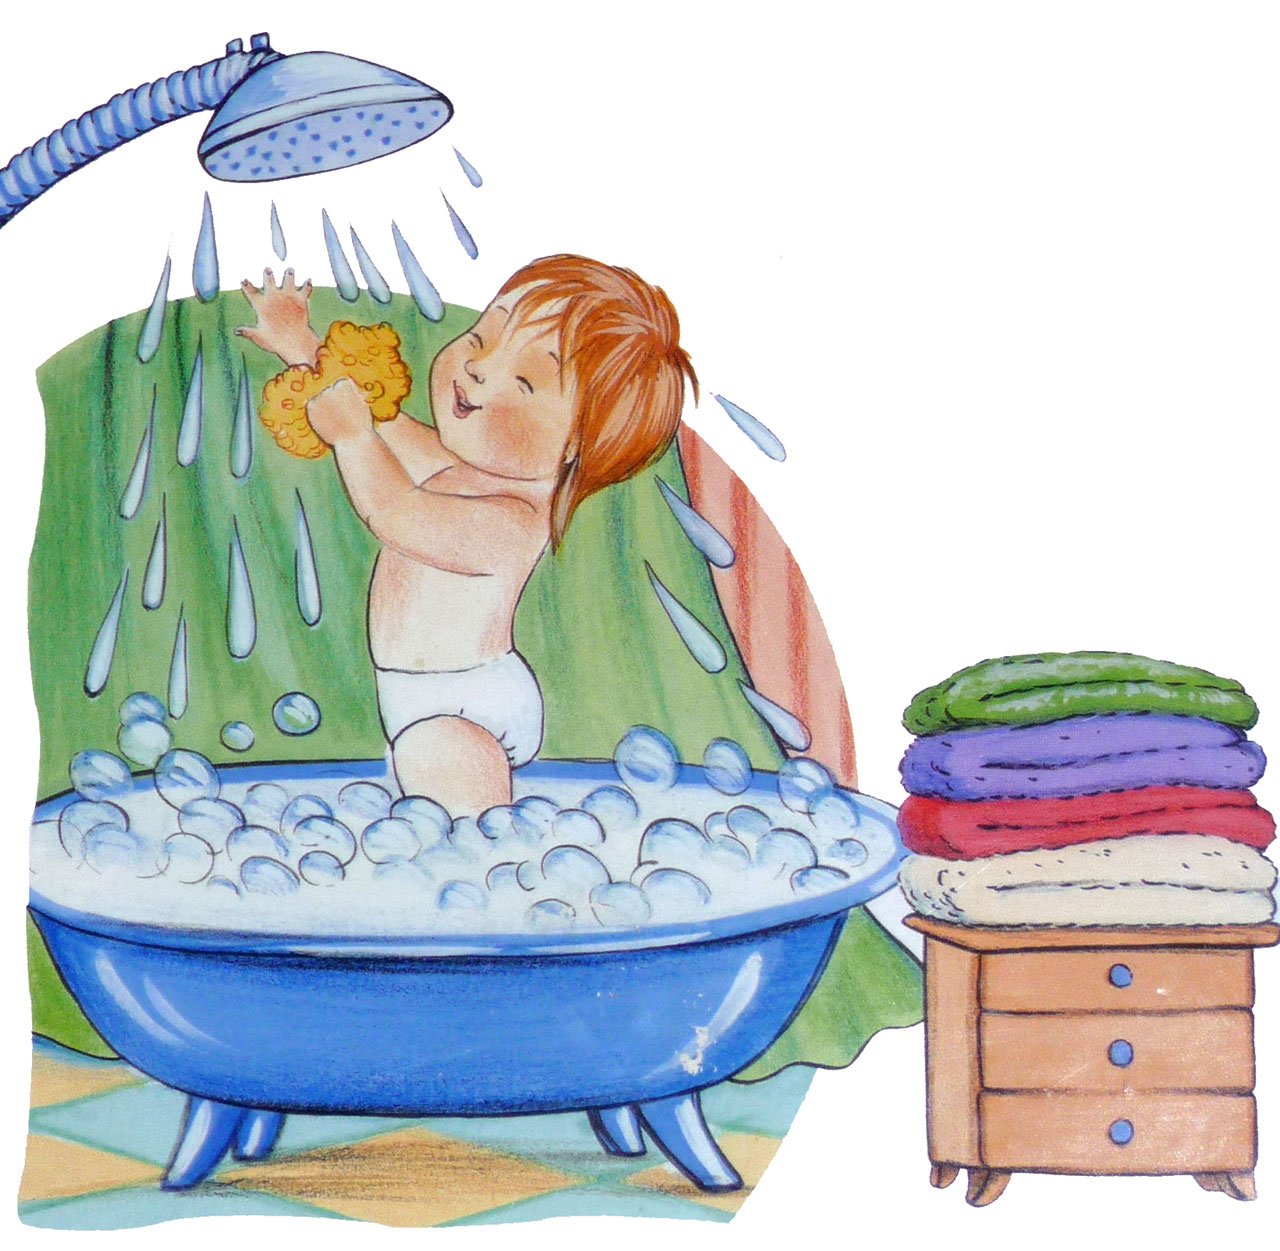 Водные процедуры для детей